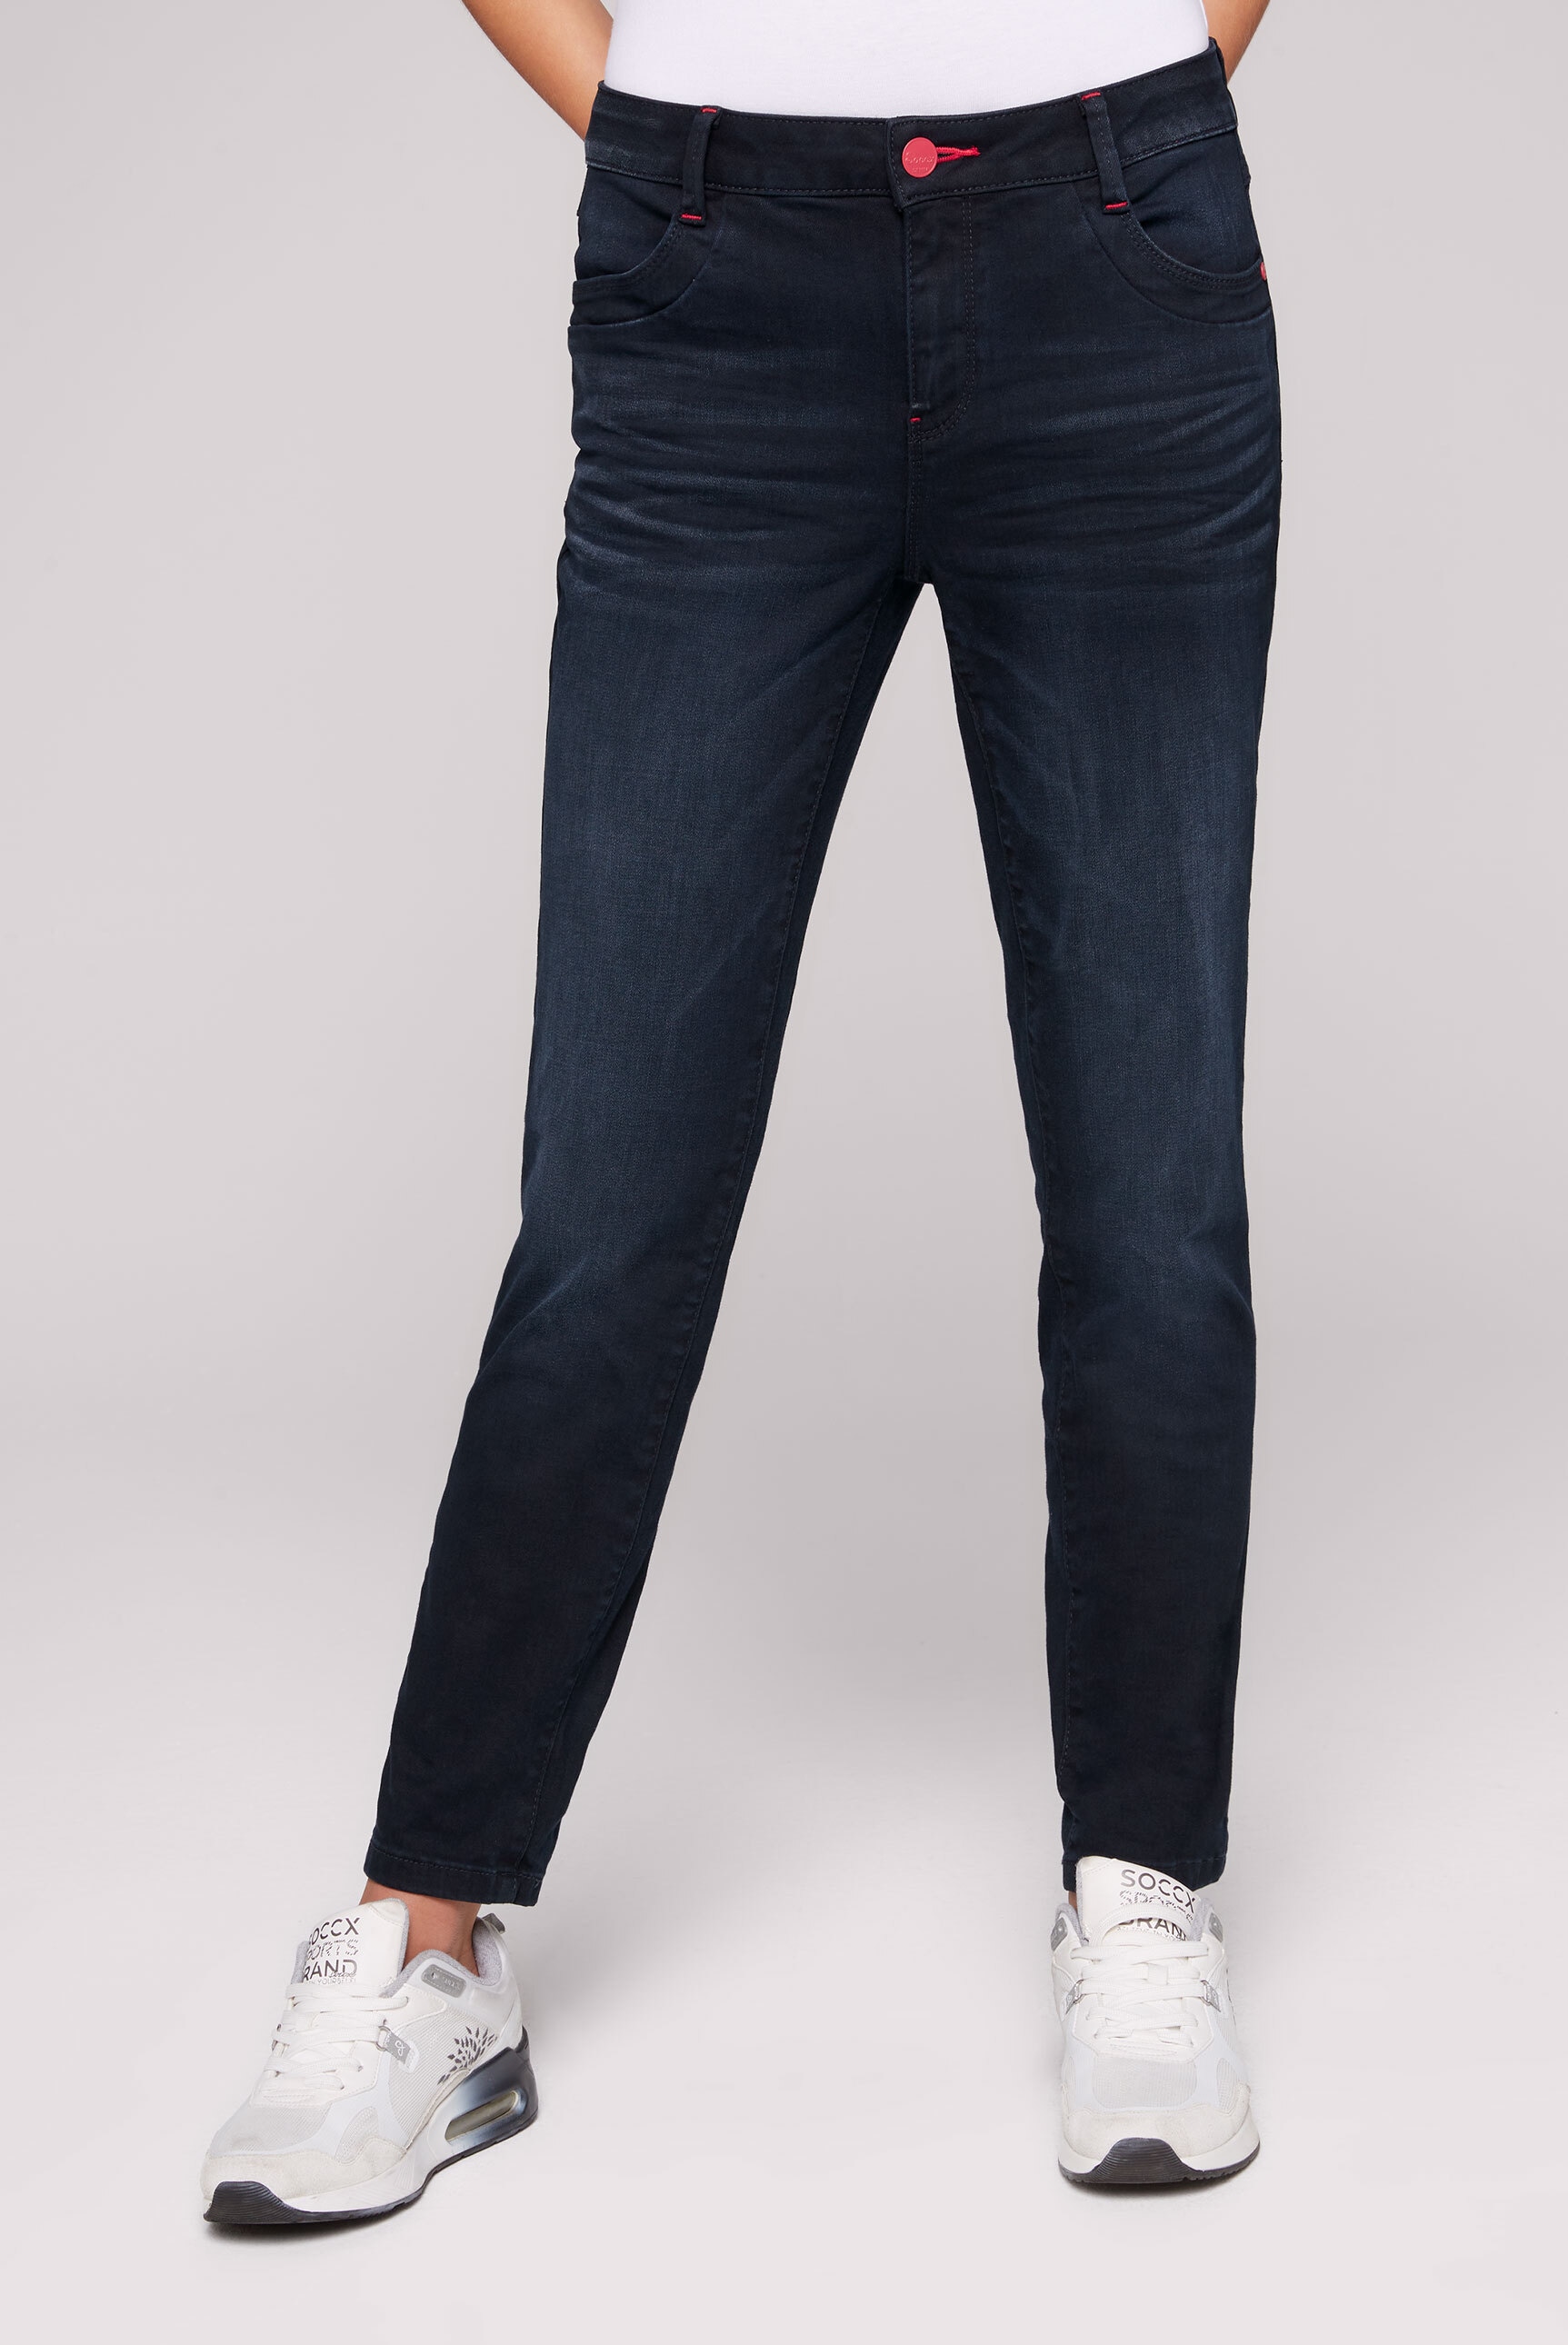 BAUR | Bleaching-Effekten SOCCX kaufen mit Regular-fit-Jeans,